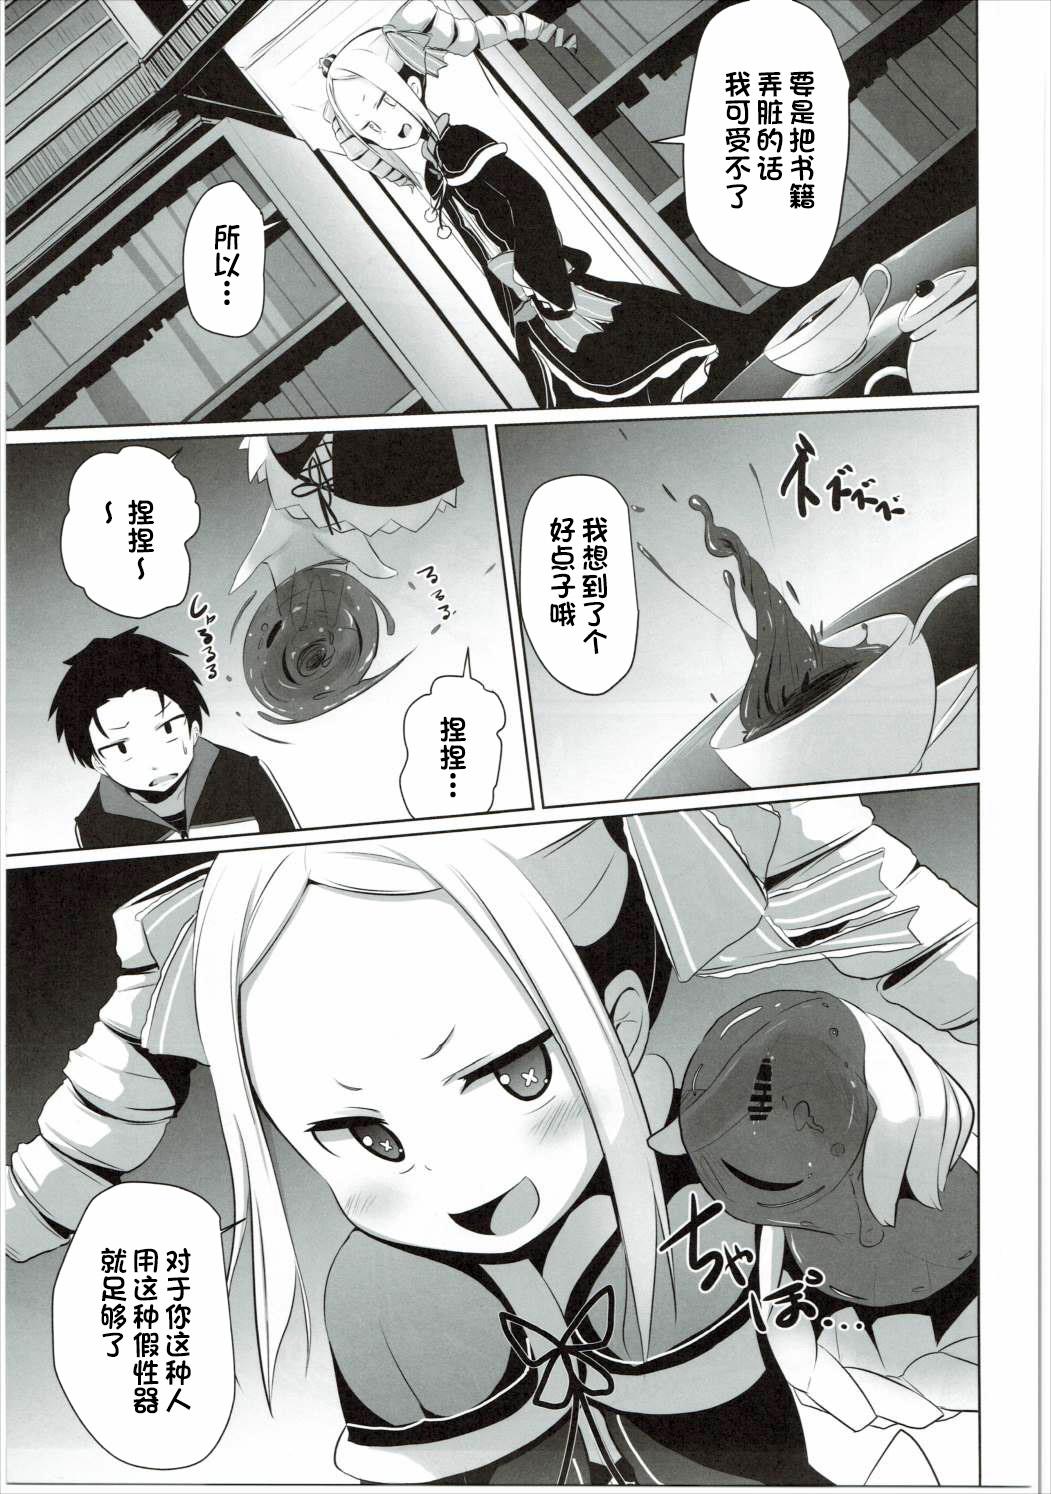 Little Omae Namaiki kashira!! - Re zero kara hajimeru isekai seikatsu Students - Page 8